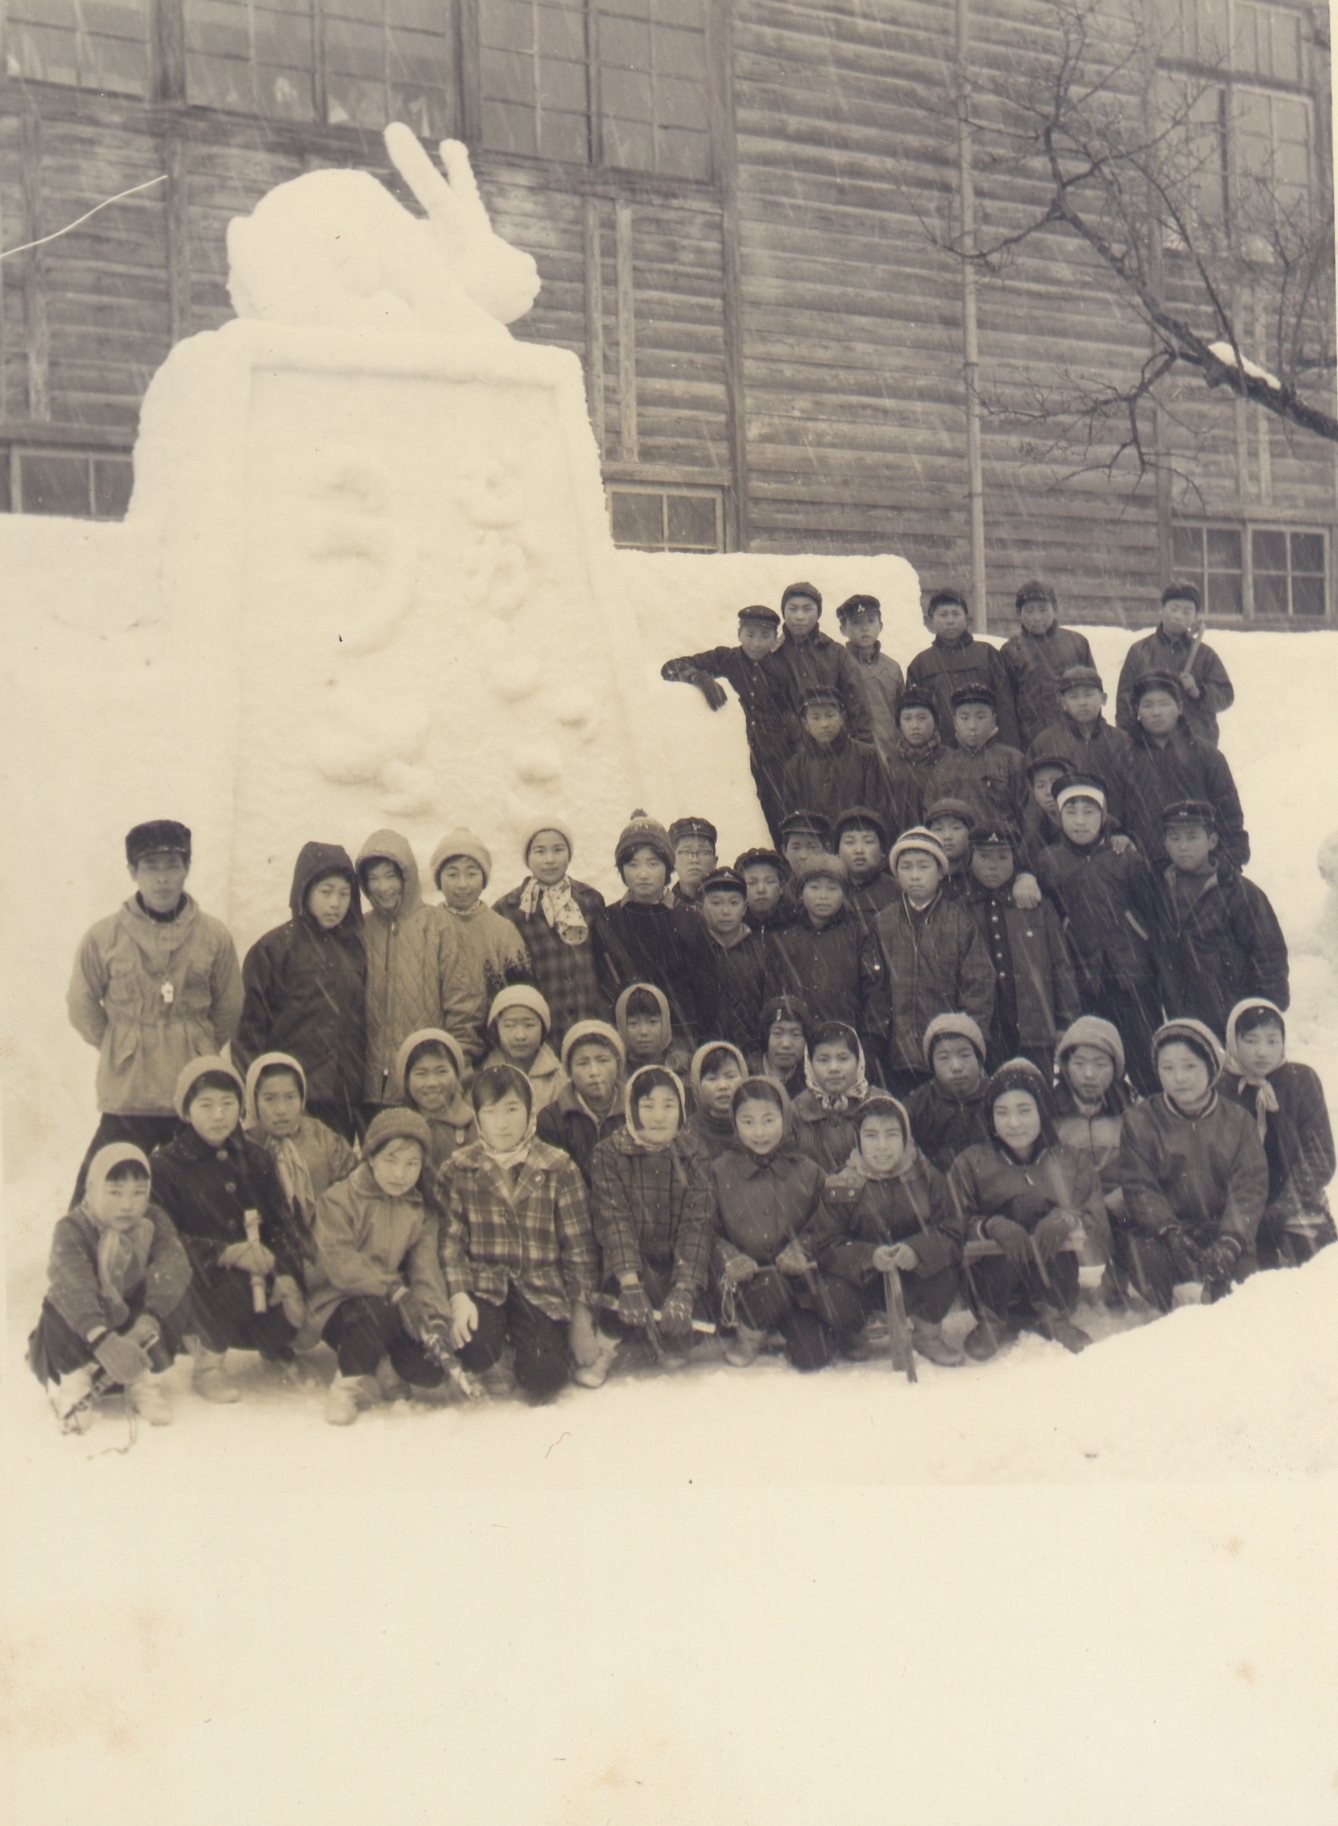 昔は小学校でも大きな雪の芸術を作っていたんだ。